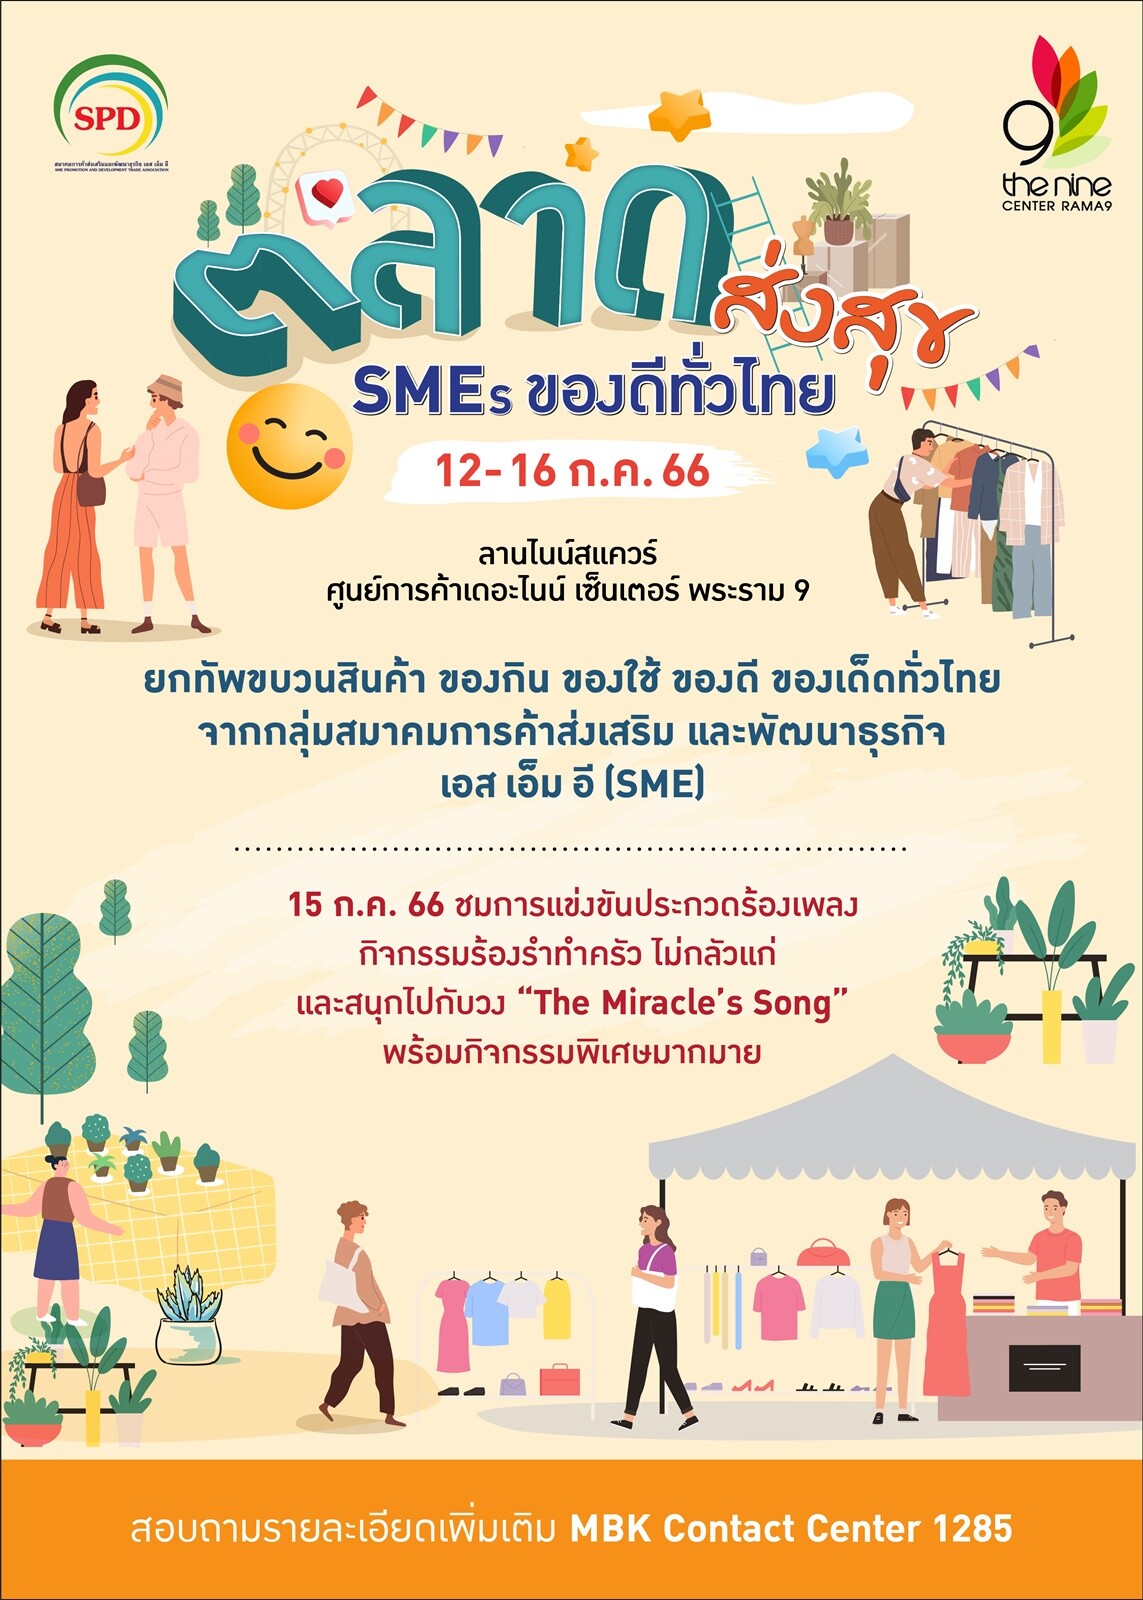 เดอะไนน์ เซ็นเตอร์ พระราม 9 รวมของดีของเด็ดทั่วไทย มาให้ช้อปสนุก @ "ตลาดส่งสุข SMEs ของดีทั่วไทย" พลาดไม่ได้ 12-16 ก.ค. นี้